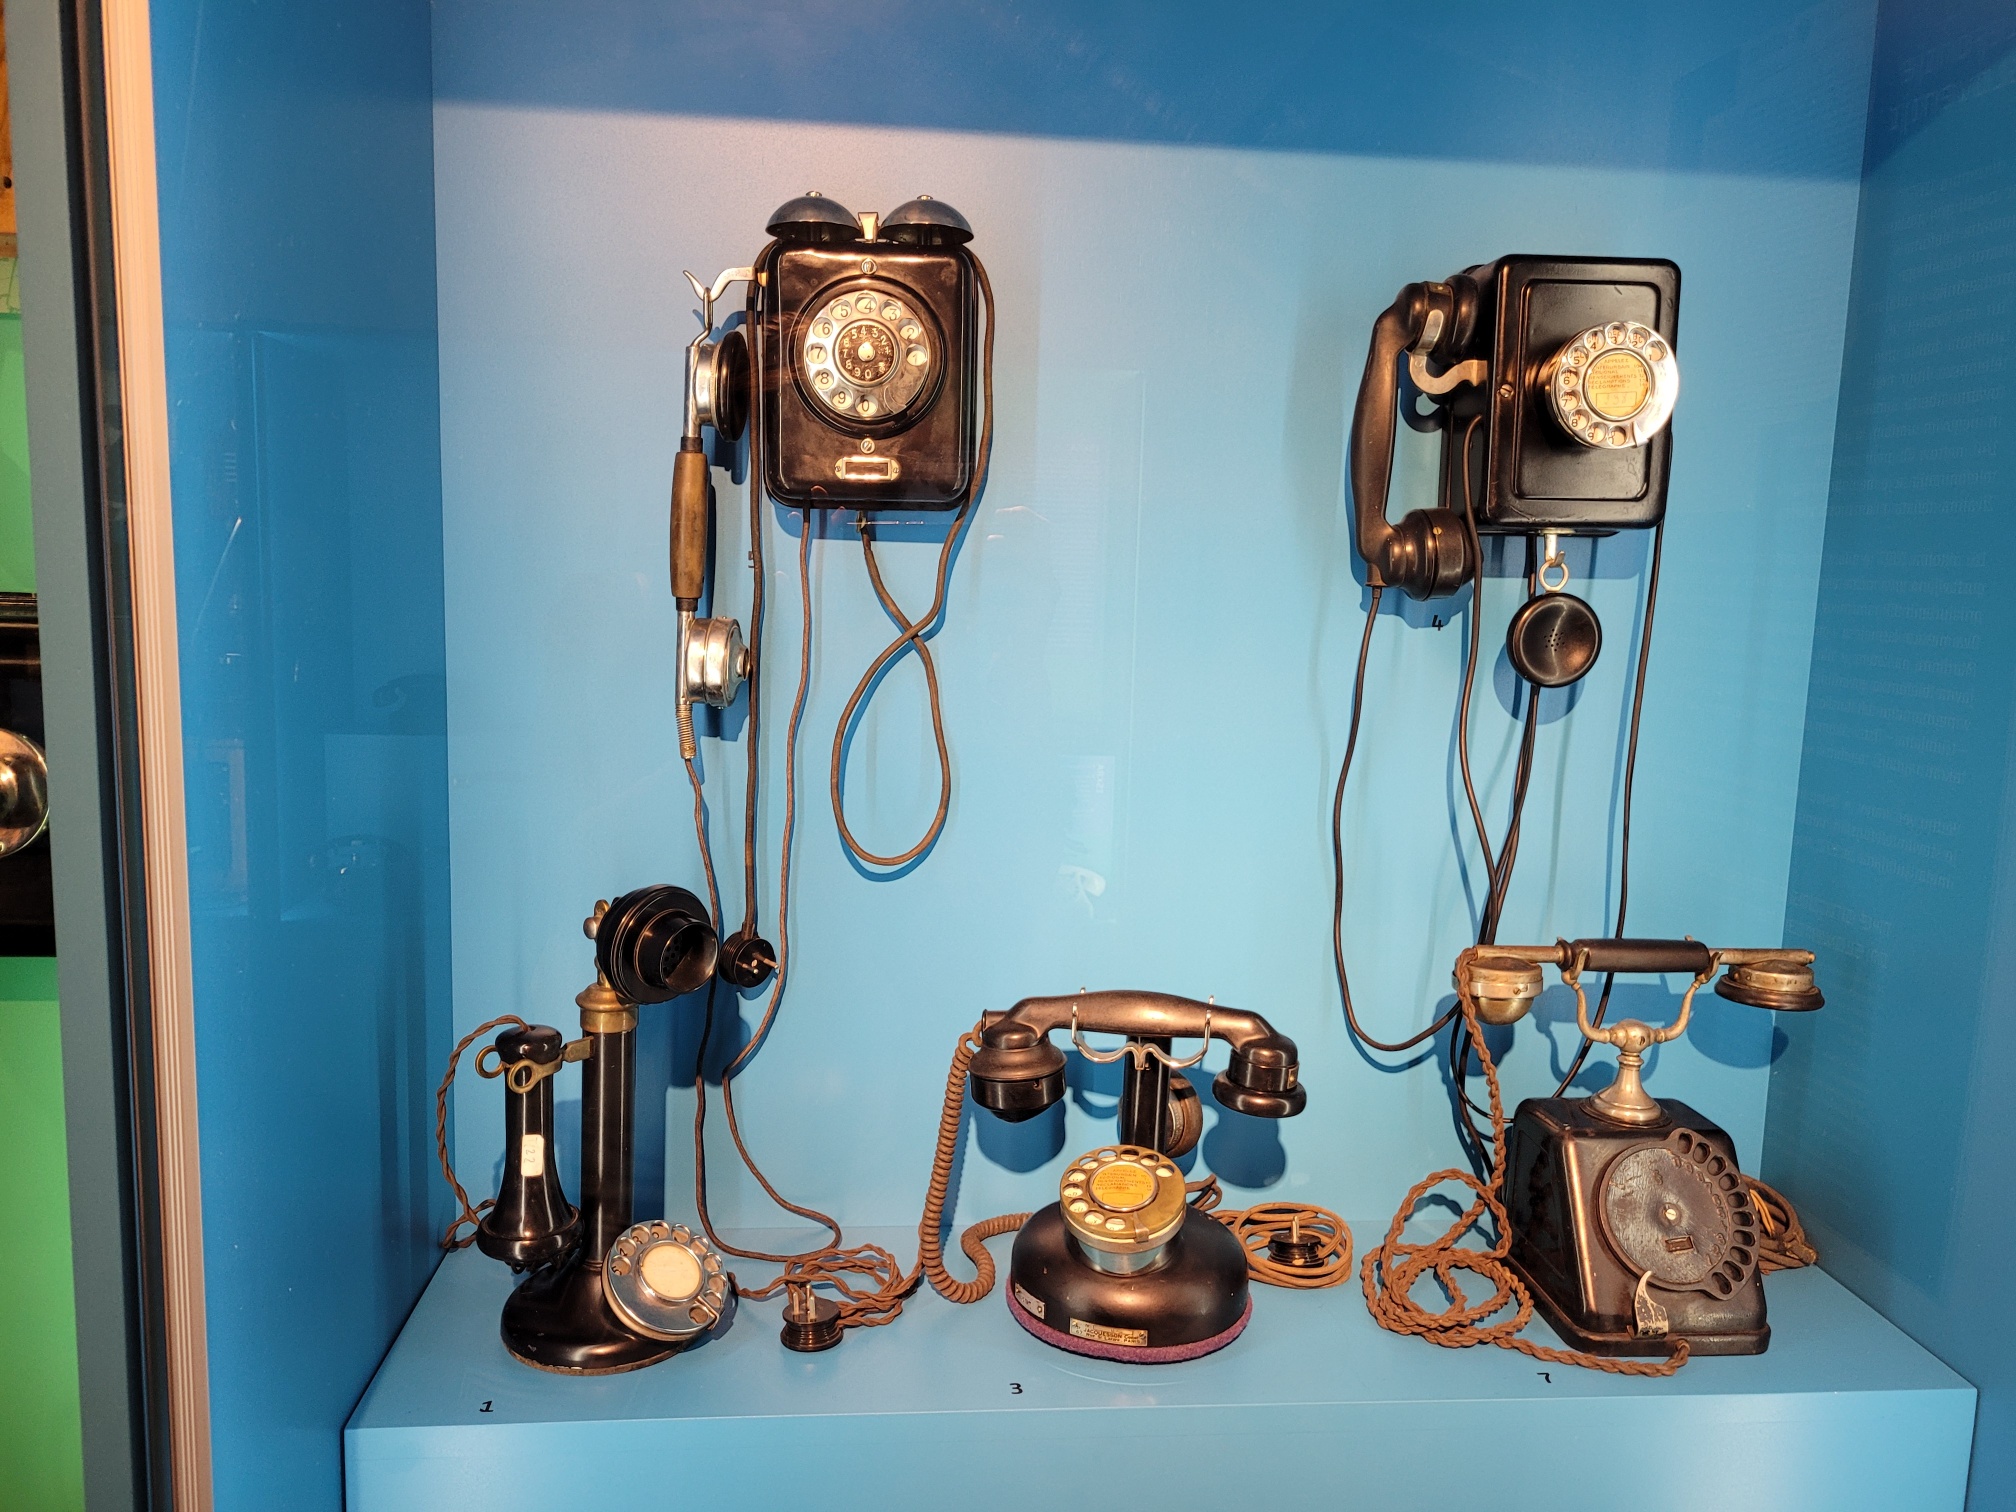 Tehniški dan – Muzej pošte in telekomunikacij Polhov Gradec